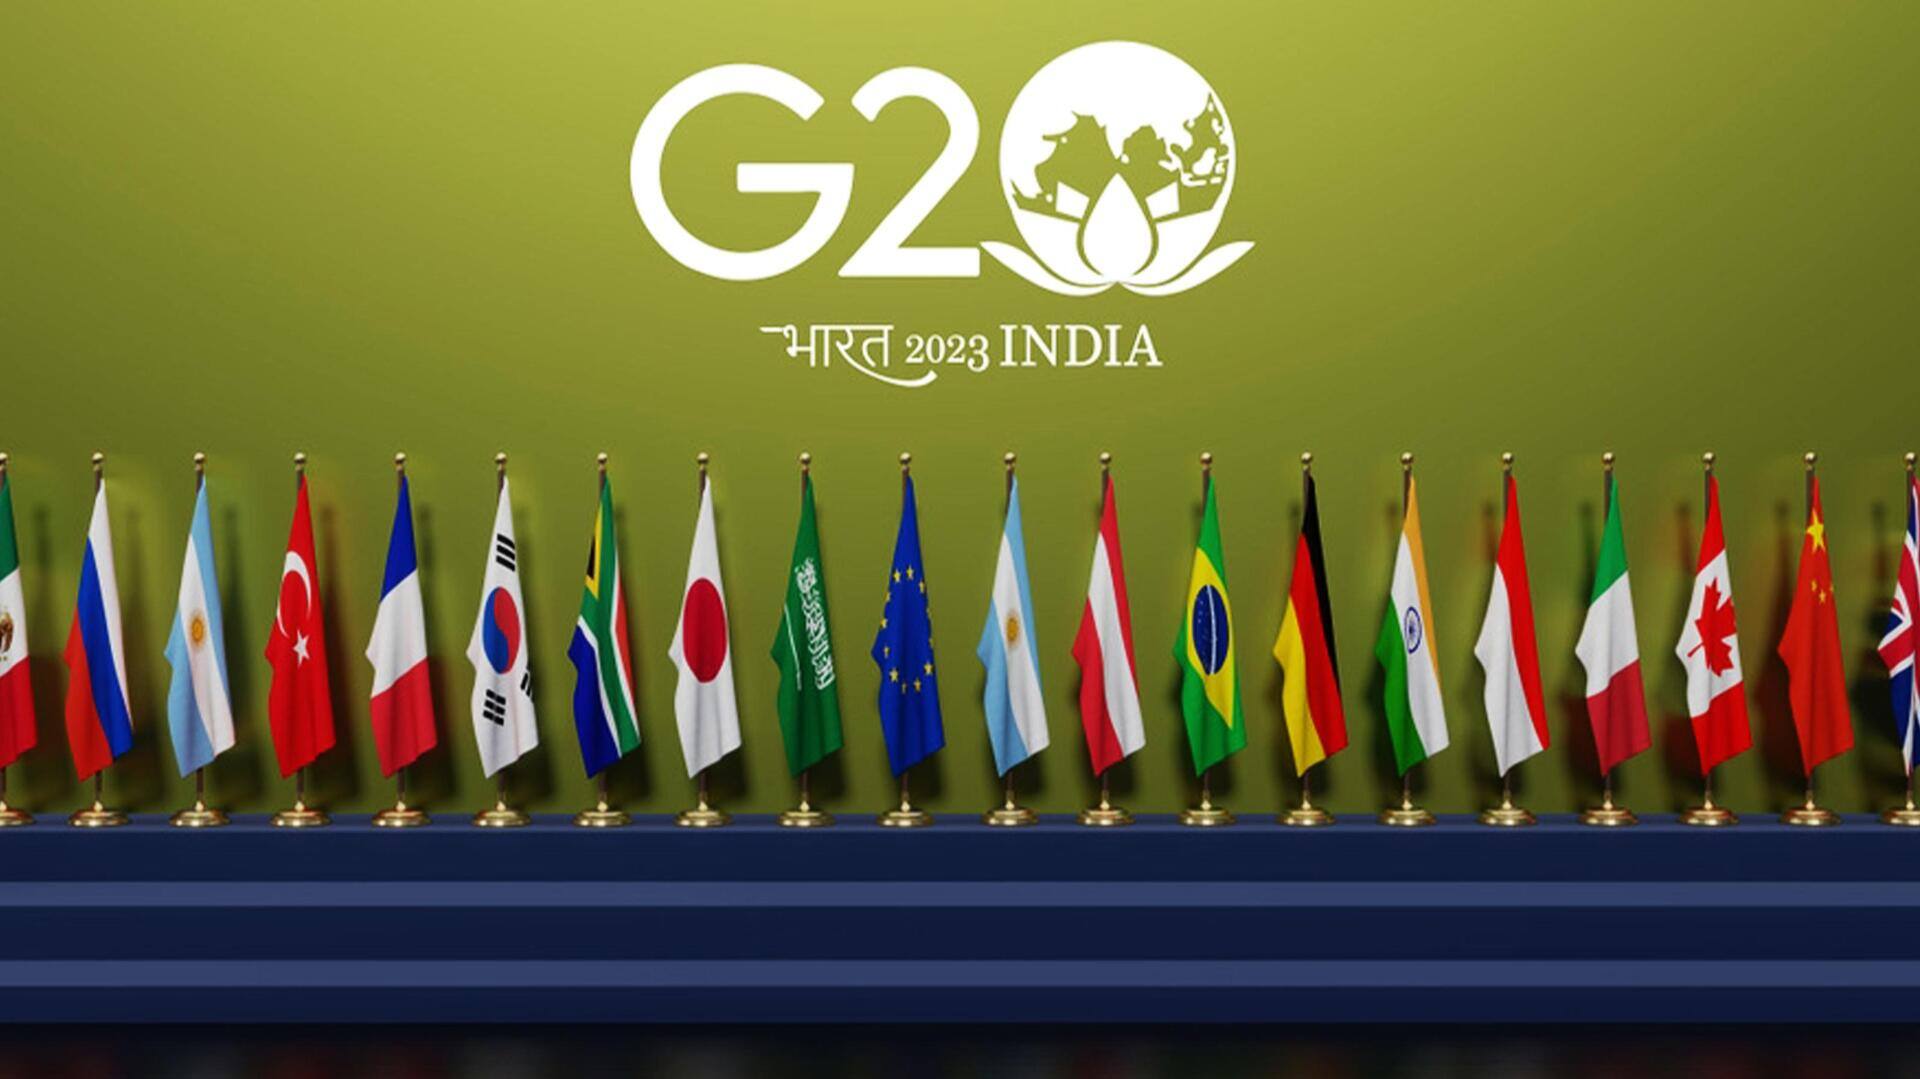 भारत में होने जा रहे G-20 शिखर सम्मेलन में कौन शामिल होगा और कौन नहीं? 